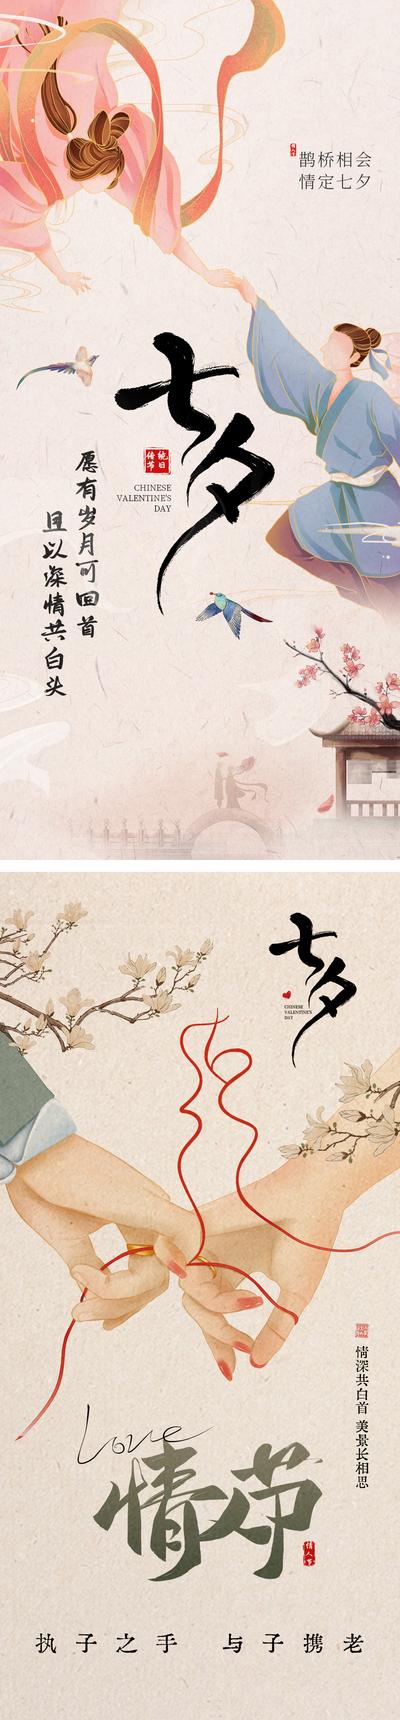 南门网 海报 中国传统节日 七夕 鹊桥 牛郎织女 插画 中式 系列